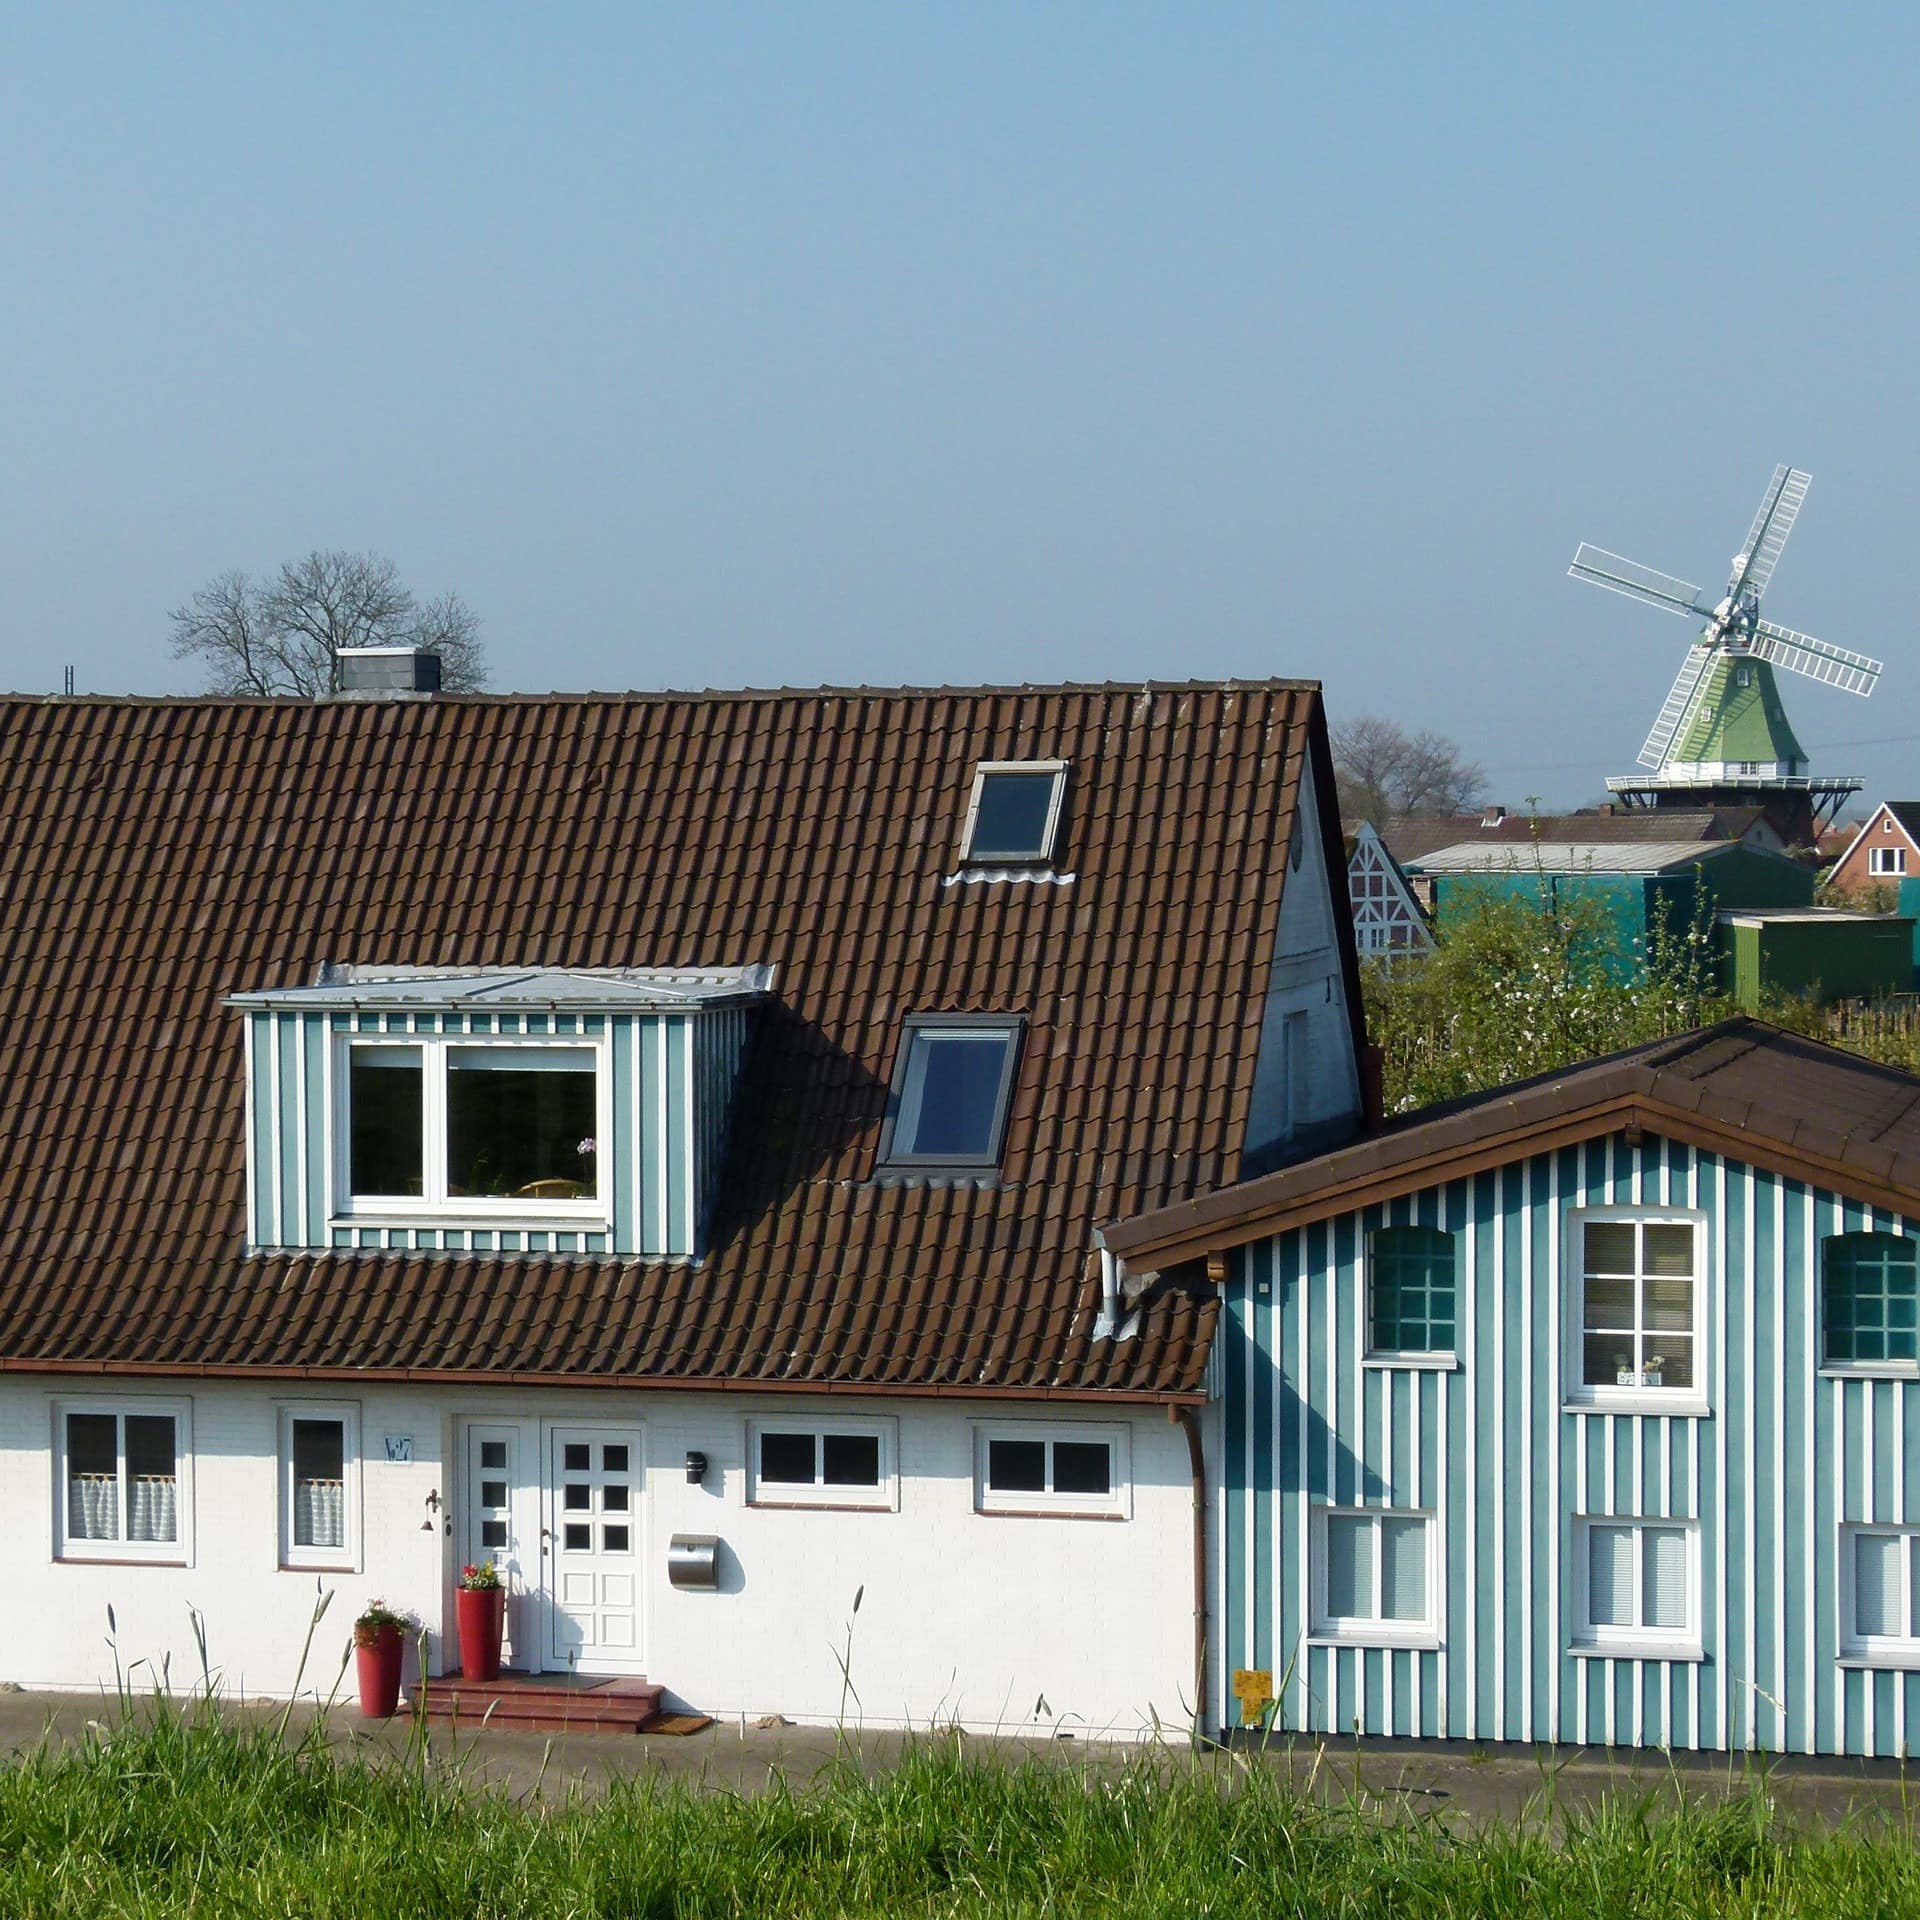 Blick vom Deich auf ein Haus mit einer Ferienwohnung in Lühe im Alten Land, im Hintergrund ist eine Windmühle zu sehen. 